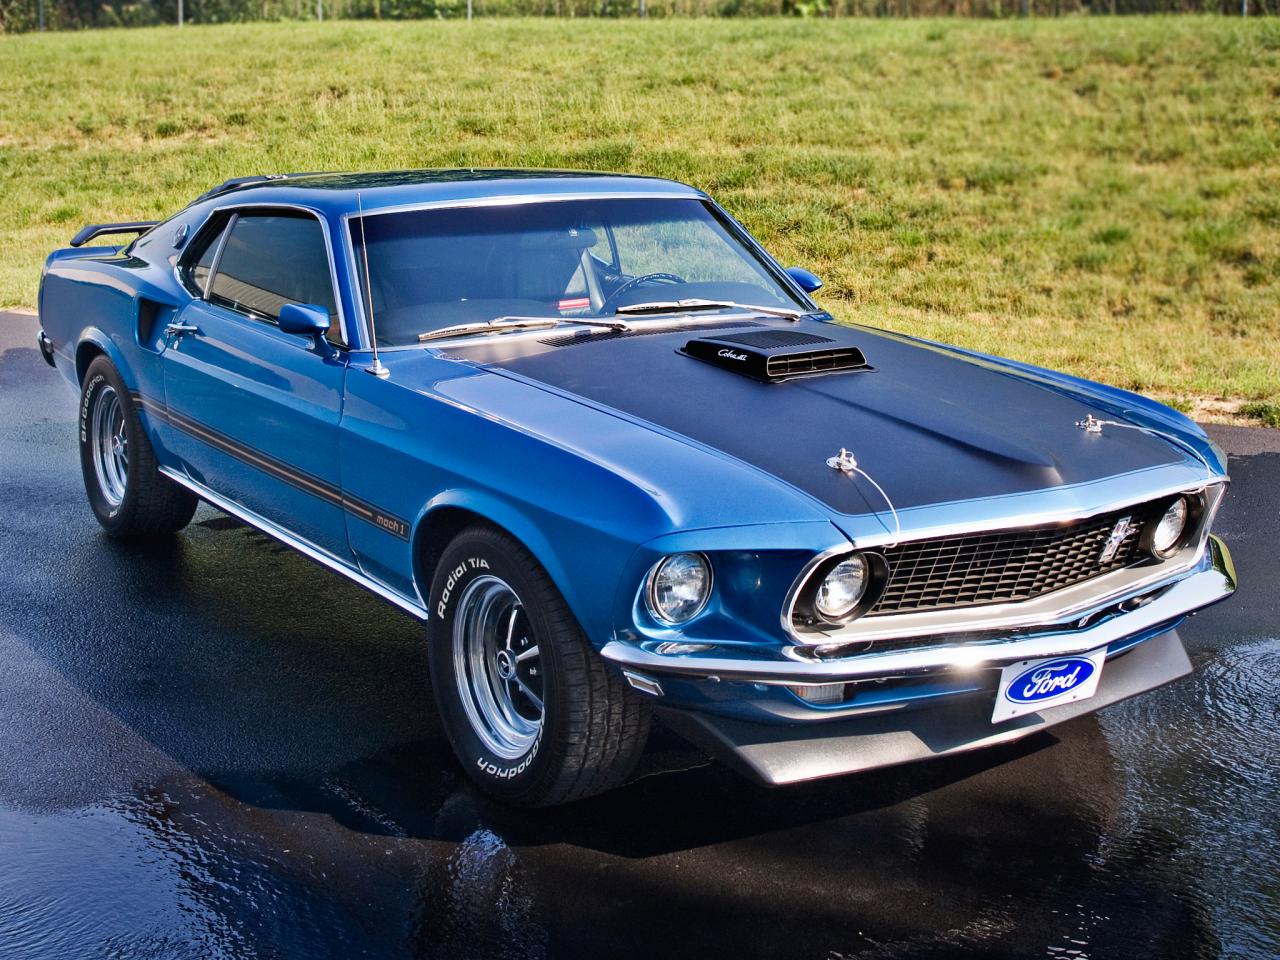 1969, Mustang, Mach, 1, 428, Super, Cobra, Jet, Mach 1, Muscle, Classic